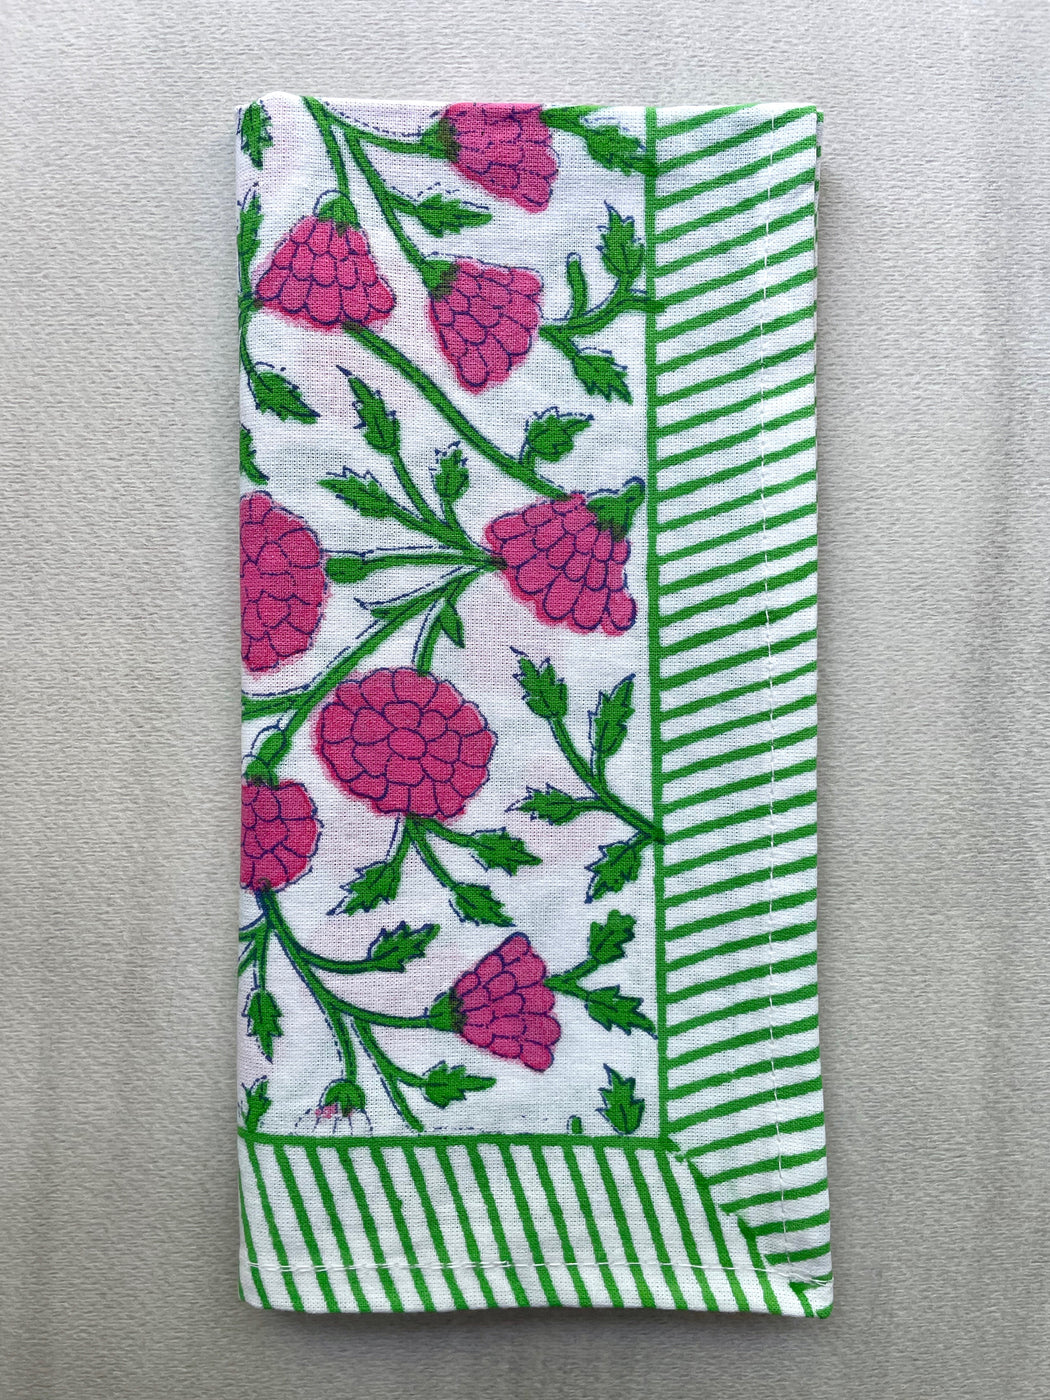 Block-Printed Indian Cotton Napkin - Pink & Green